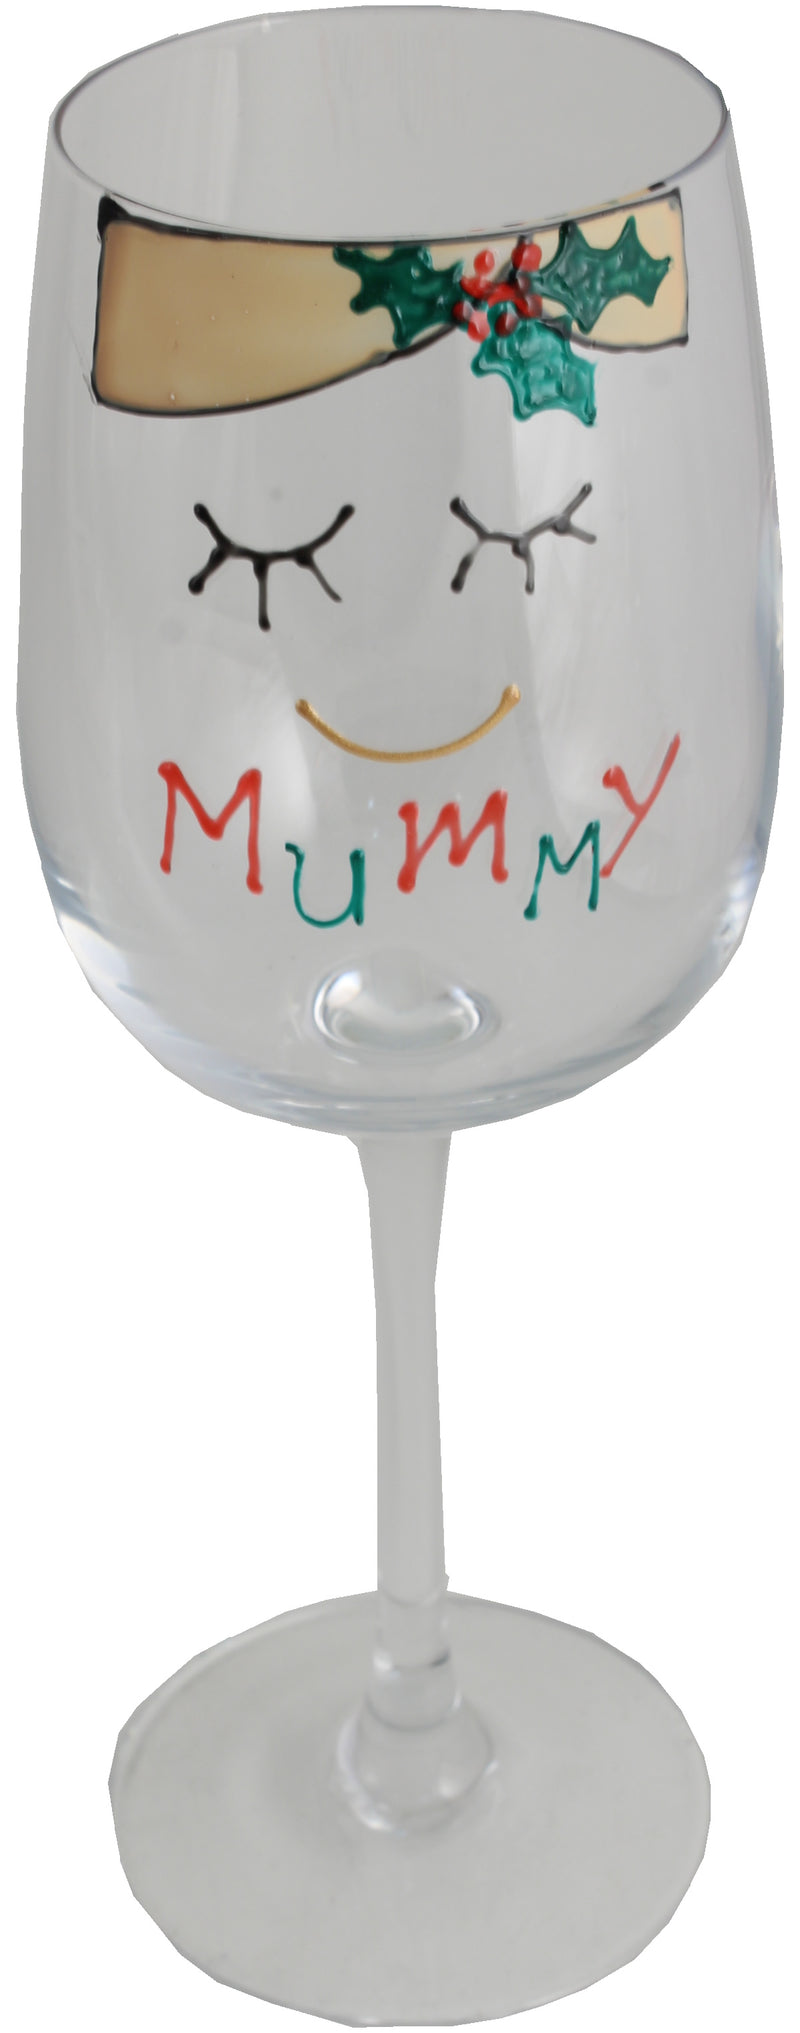 Mummy Wine Glass (Xmas)